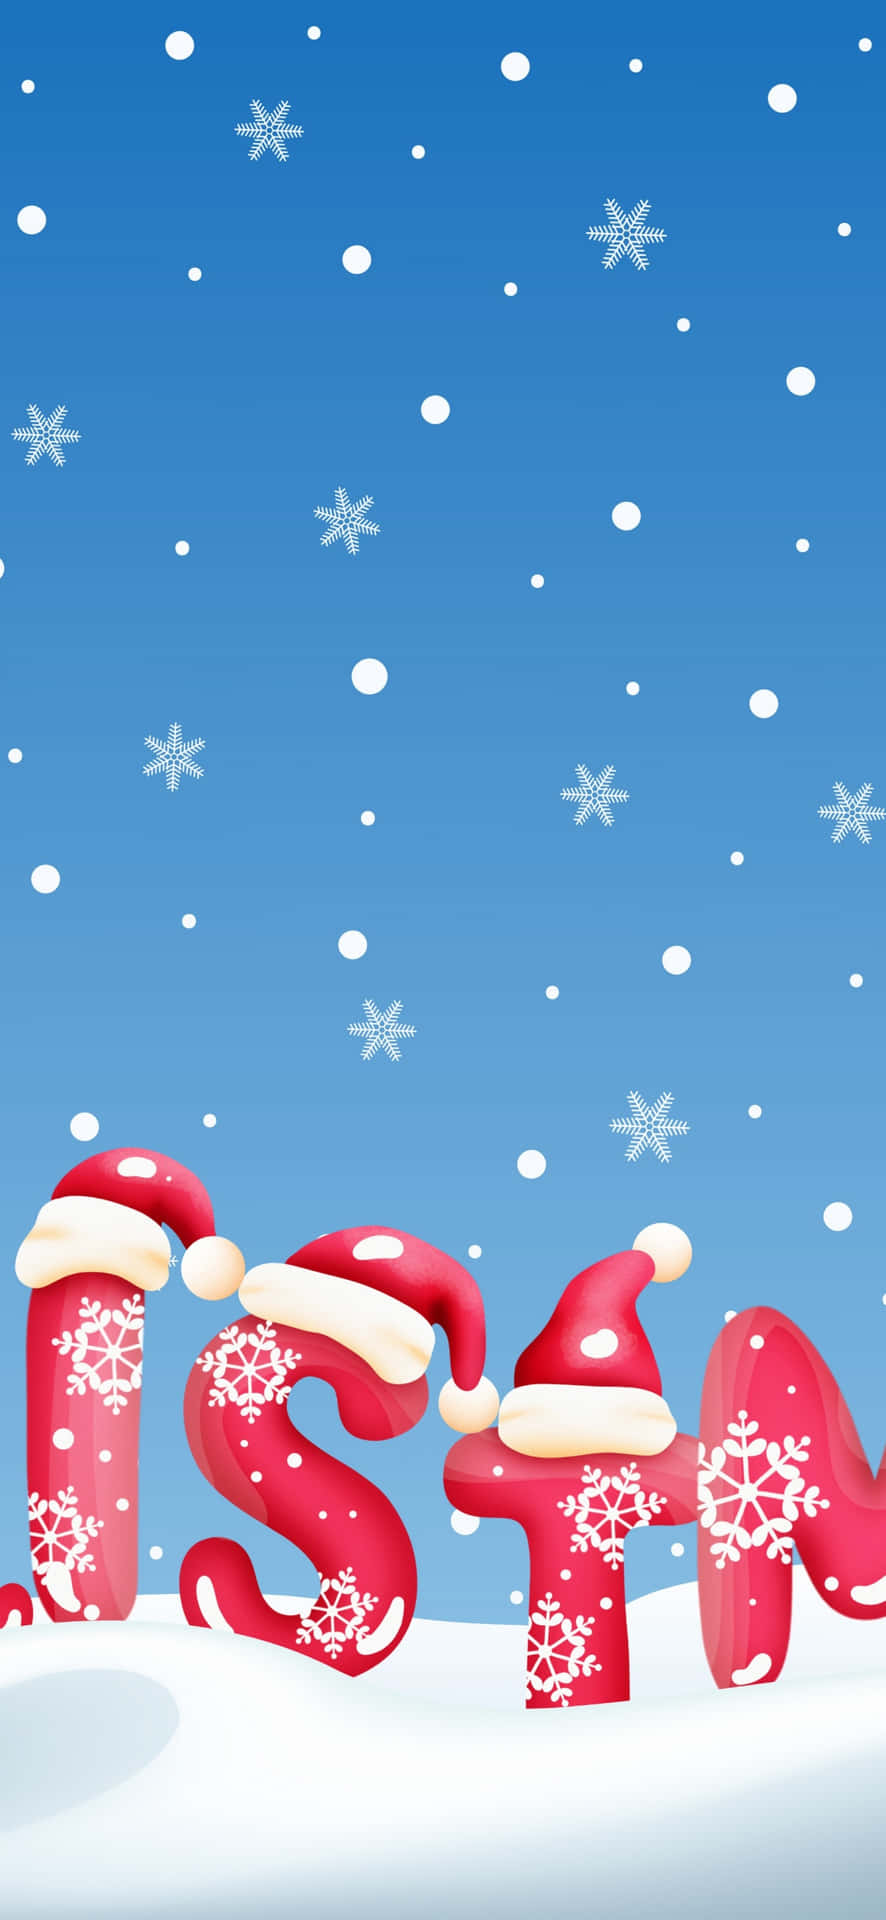 Unárbol De Navidad Con Gorros De Santa Claus Y Copos De Nieve